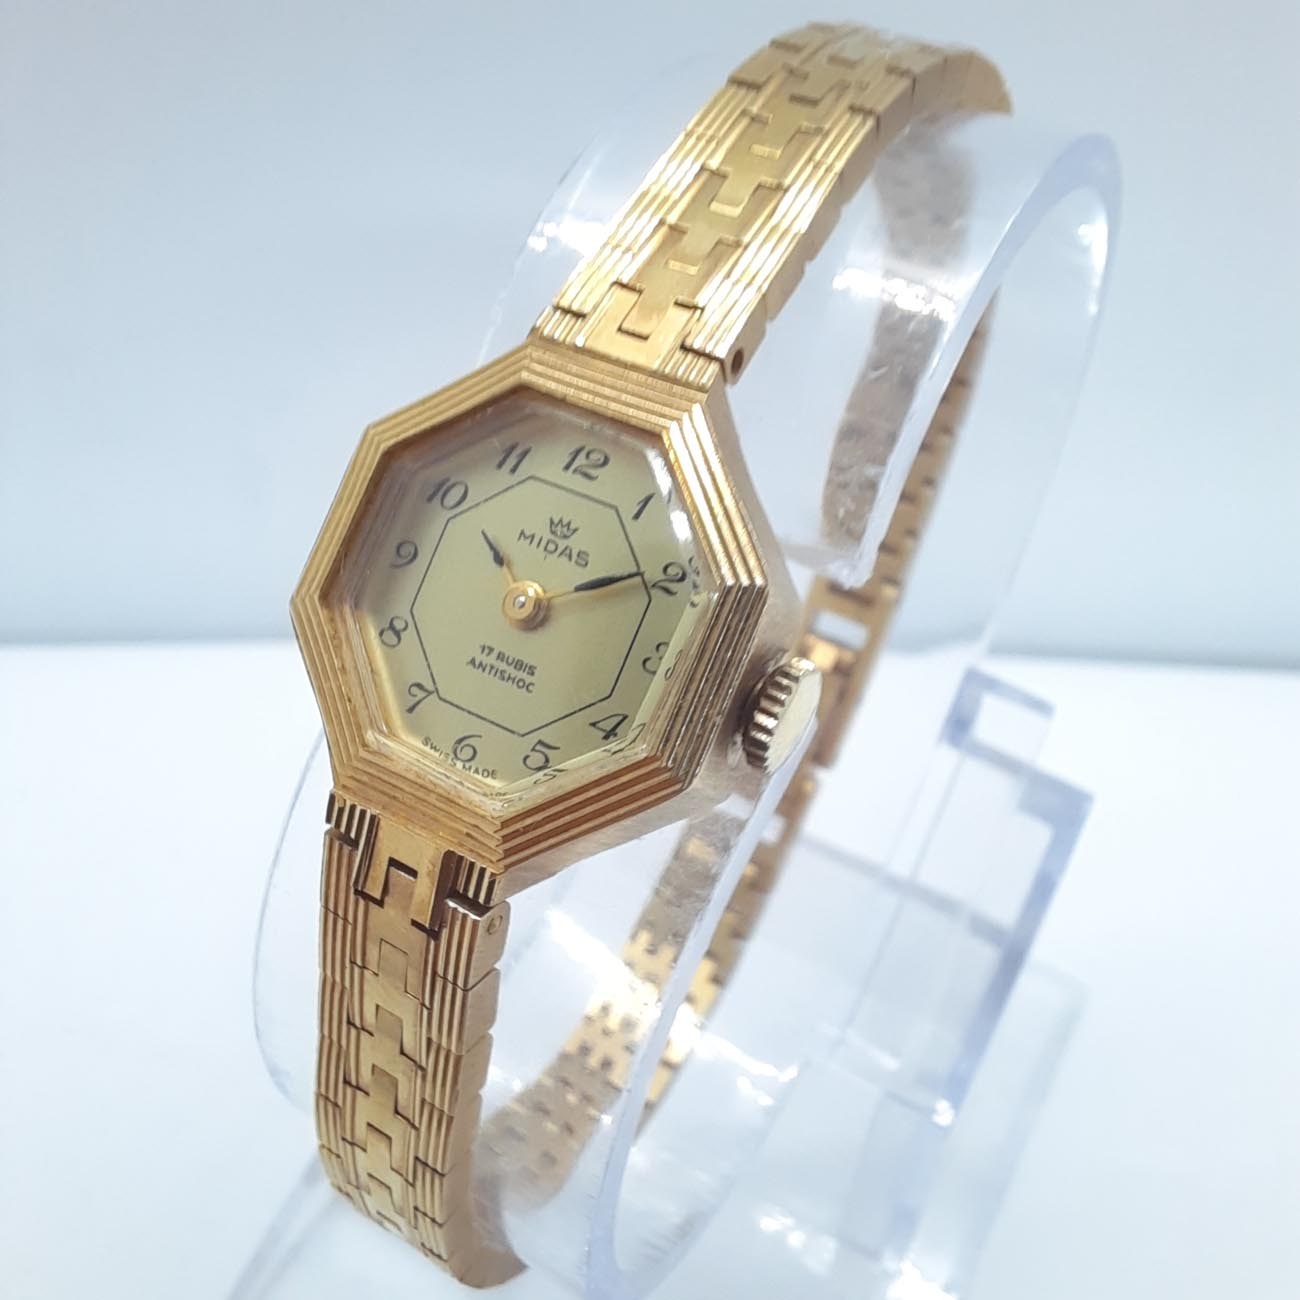 Vintage κουρδιστό ρολόι οκτάγωνο